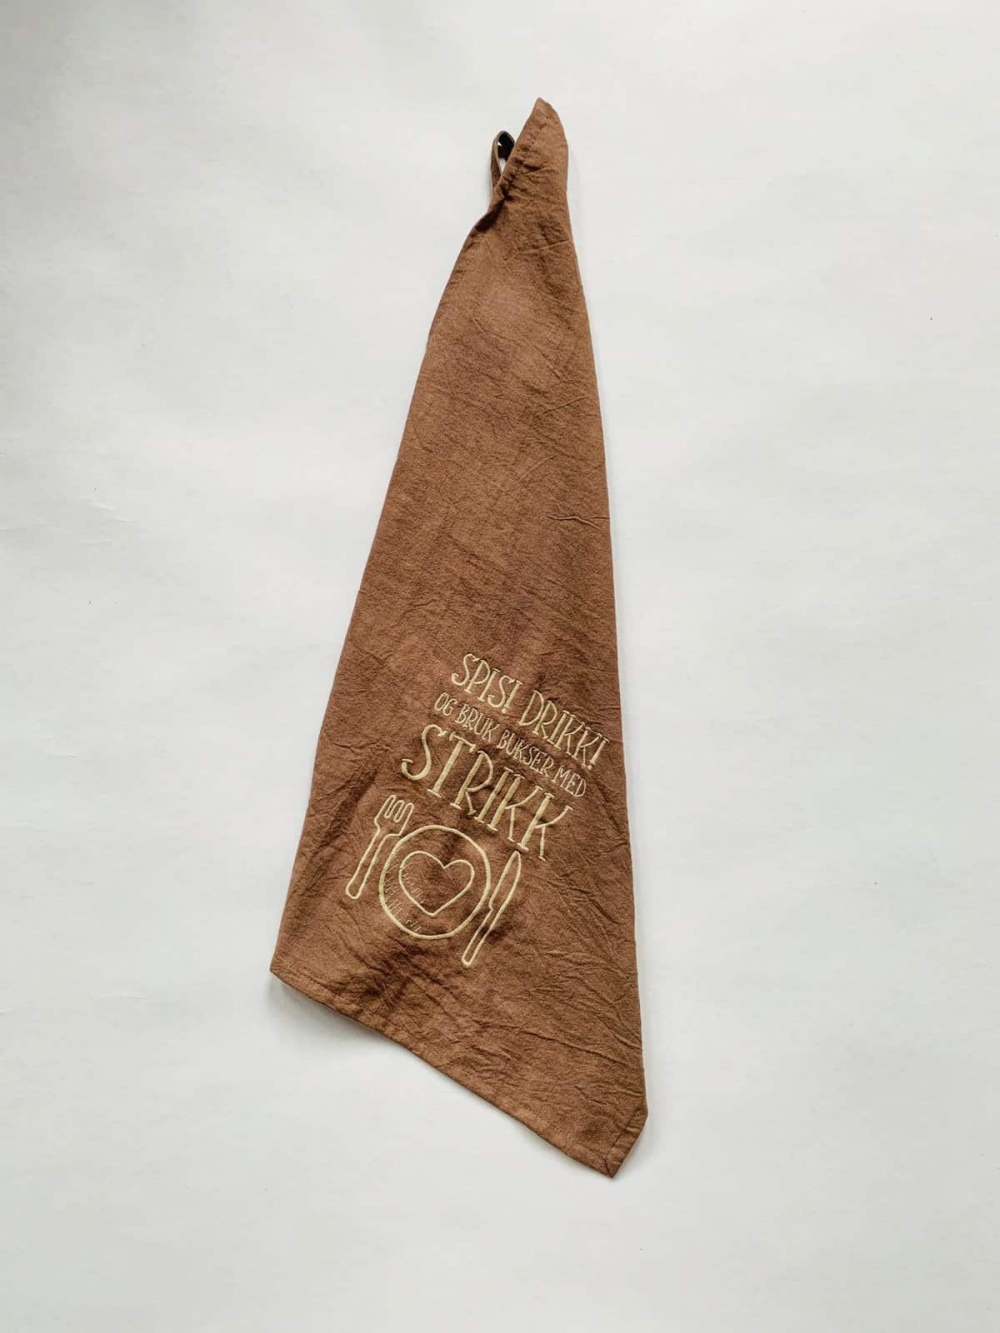 Kjøkkenhåndkle med brodert tekst. Håndkleet måler 50x70cm og er laget av bomull. Morsom gave eller pynt på kjøkkenet. 